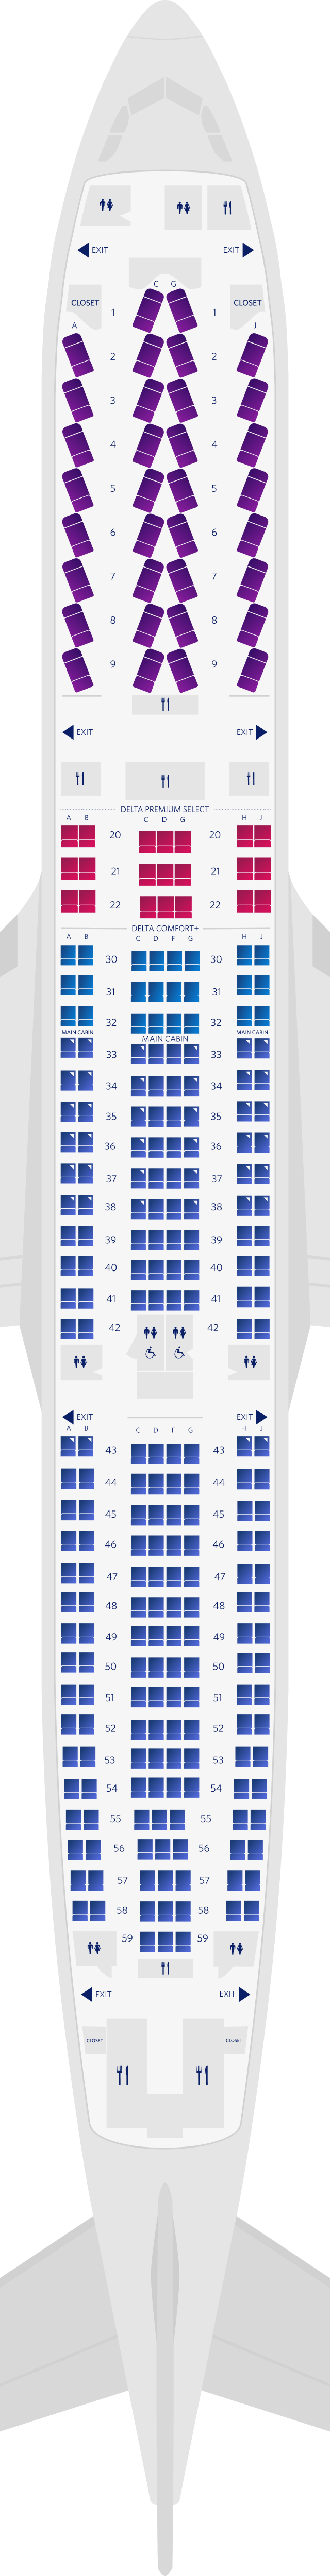 에어버스 A330-300 4-객실 좌석 배치도(3M3)